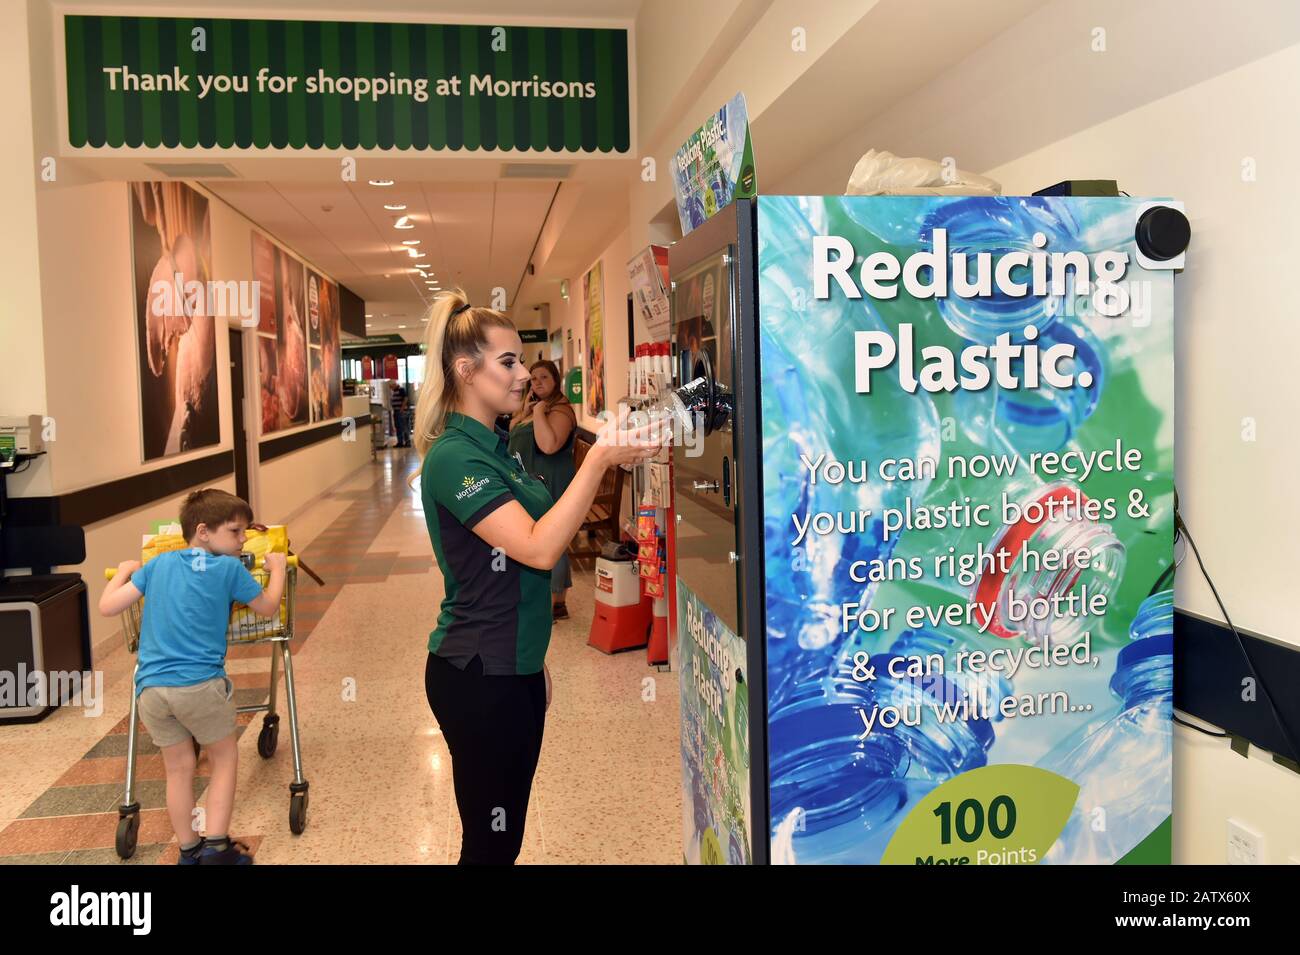 Morrisons Supermarkets está probando una máquina expendedora inversa en la tienda para que los clientes inserten botellas de plástico vacías y reciban puntos de recompensa. Foto de stock